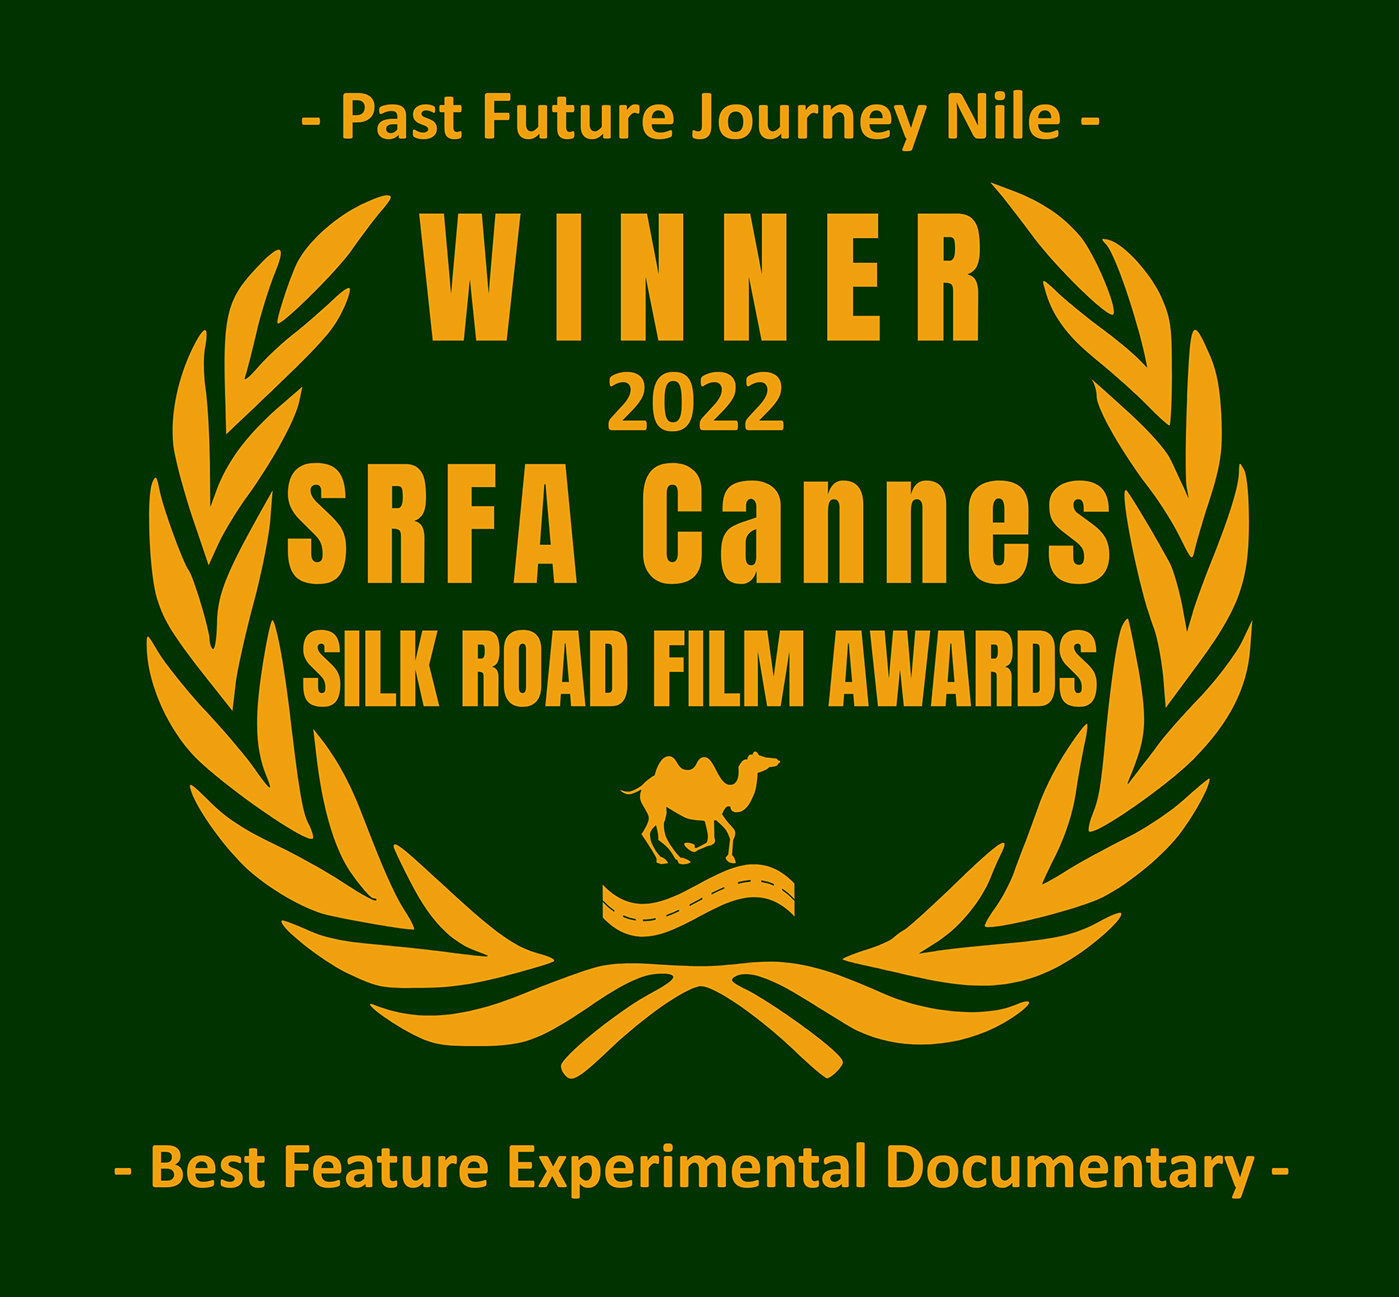 Silk Road Film Award Cannes